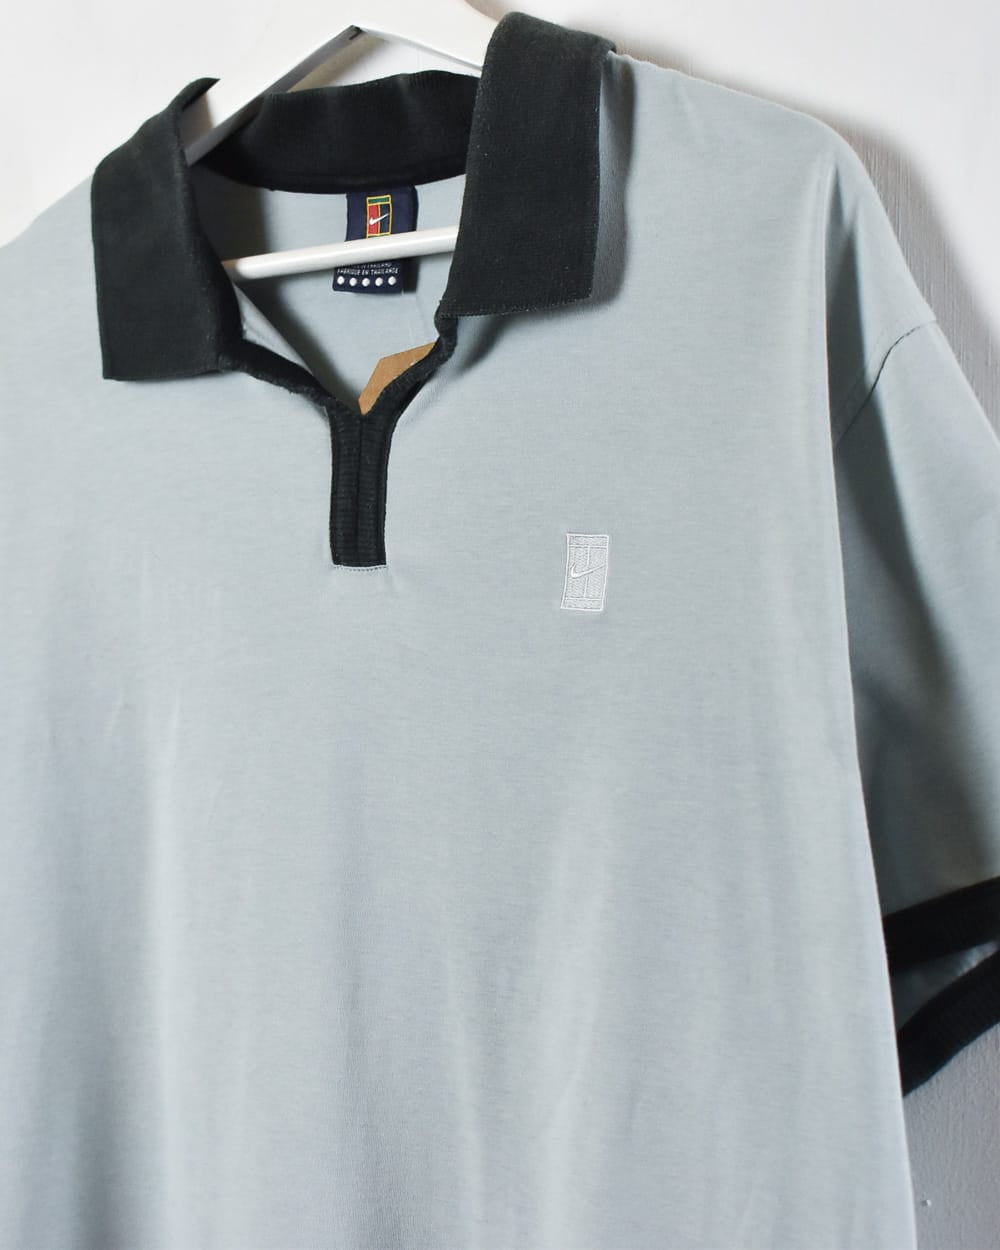 BabyBlue Nike Challenge Court Polo Shirt - Large